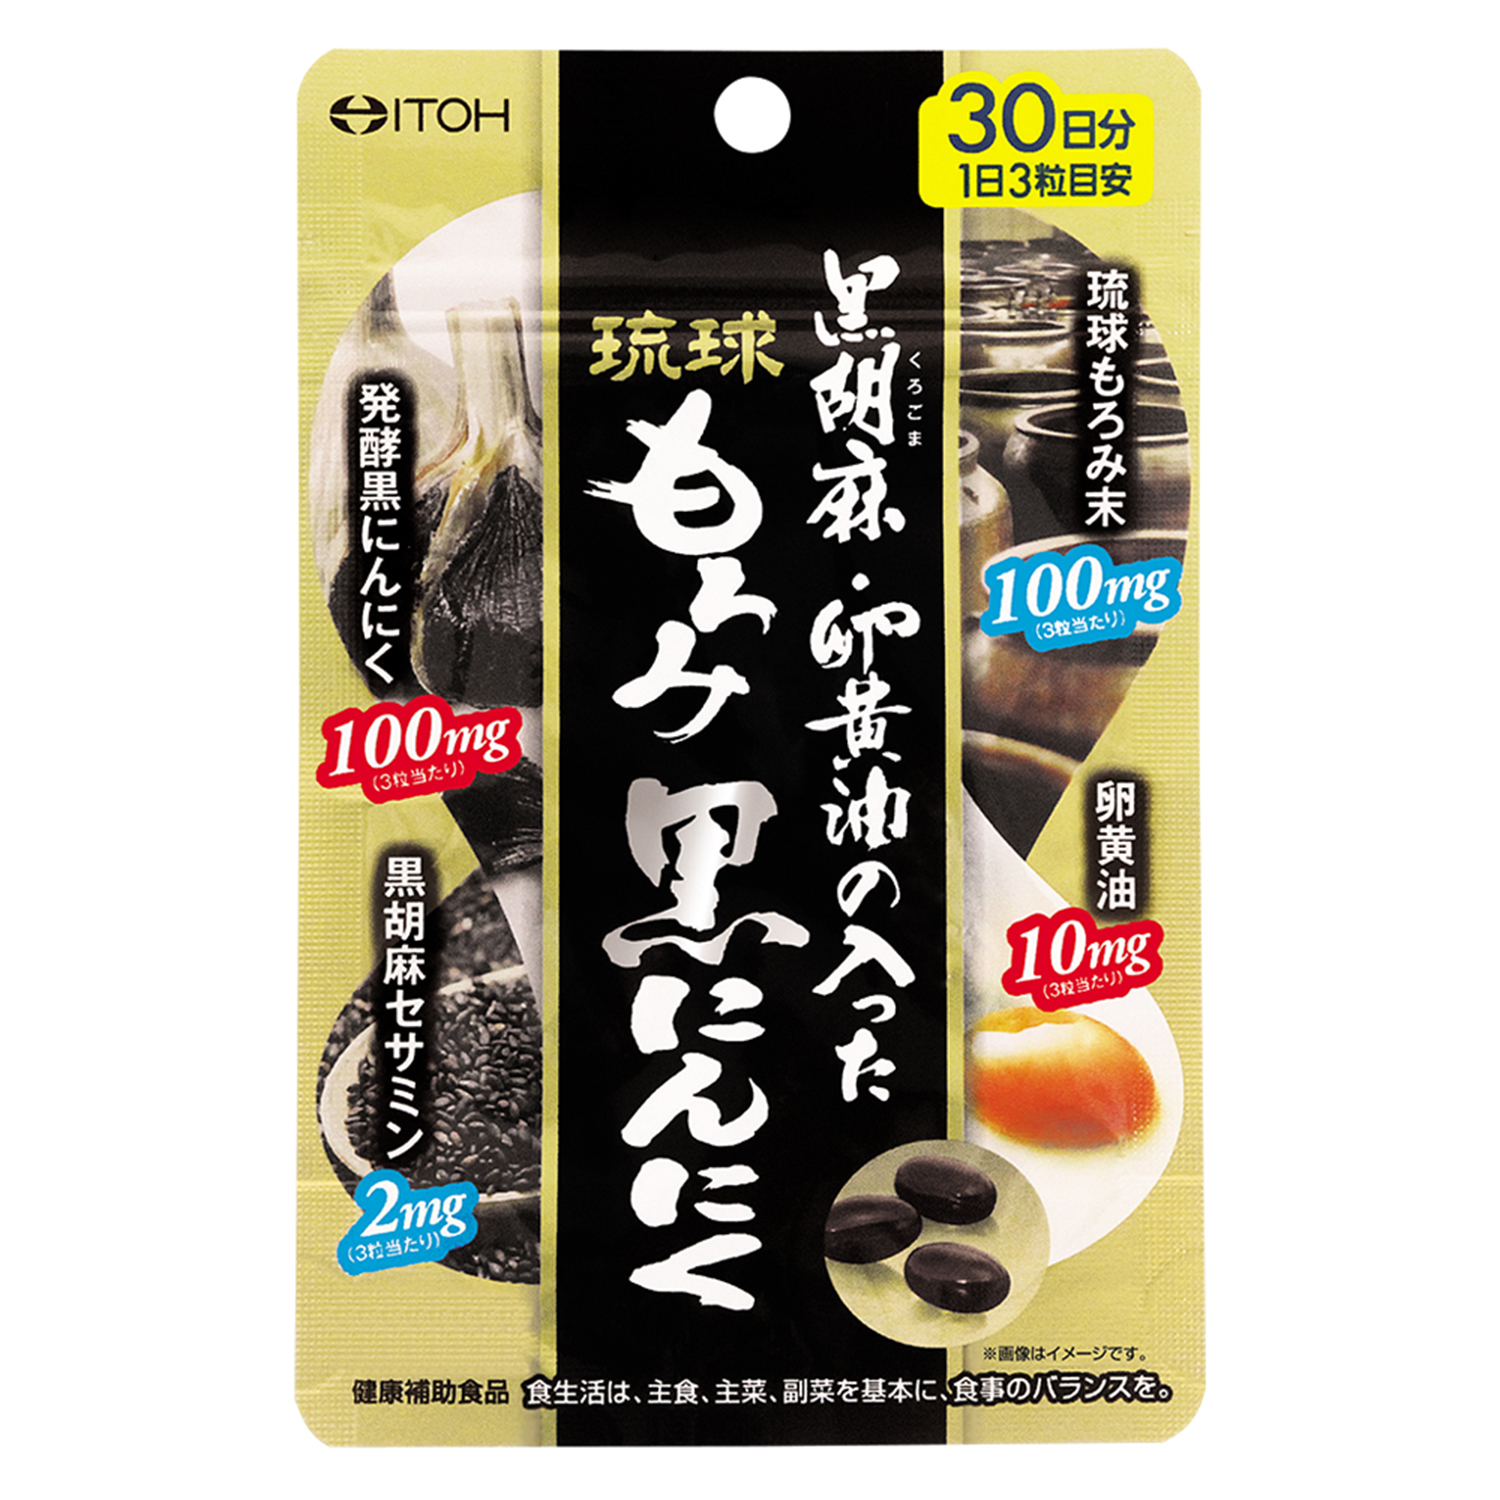 黒胡麻・卵黄油の入った琉球もろみ黒にんにく | 健康食品のことなら井藤漢方製薬